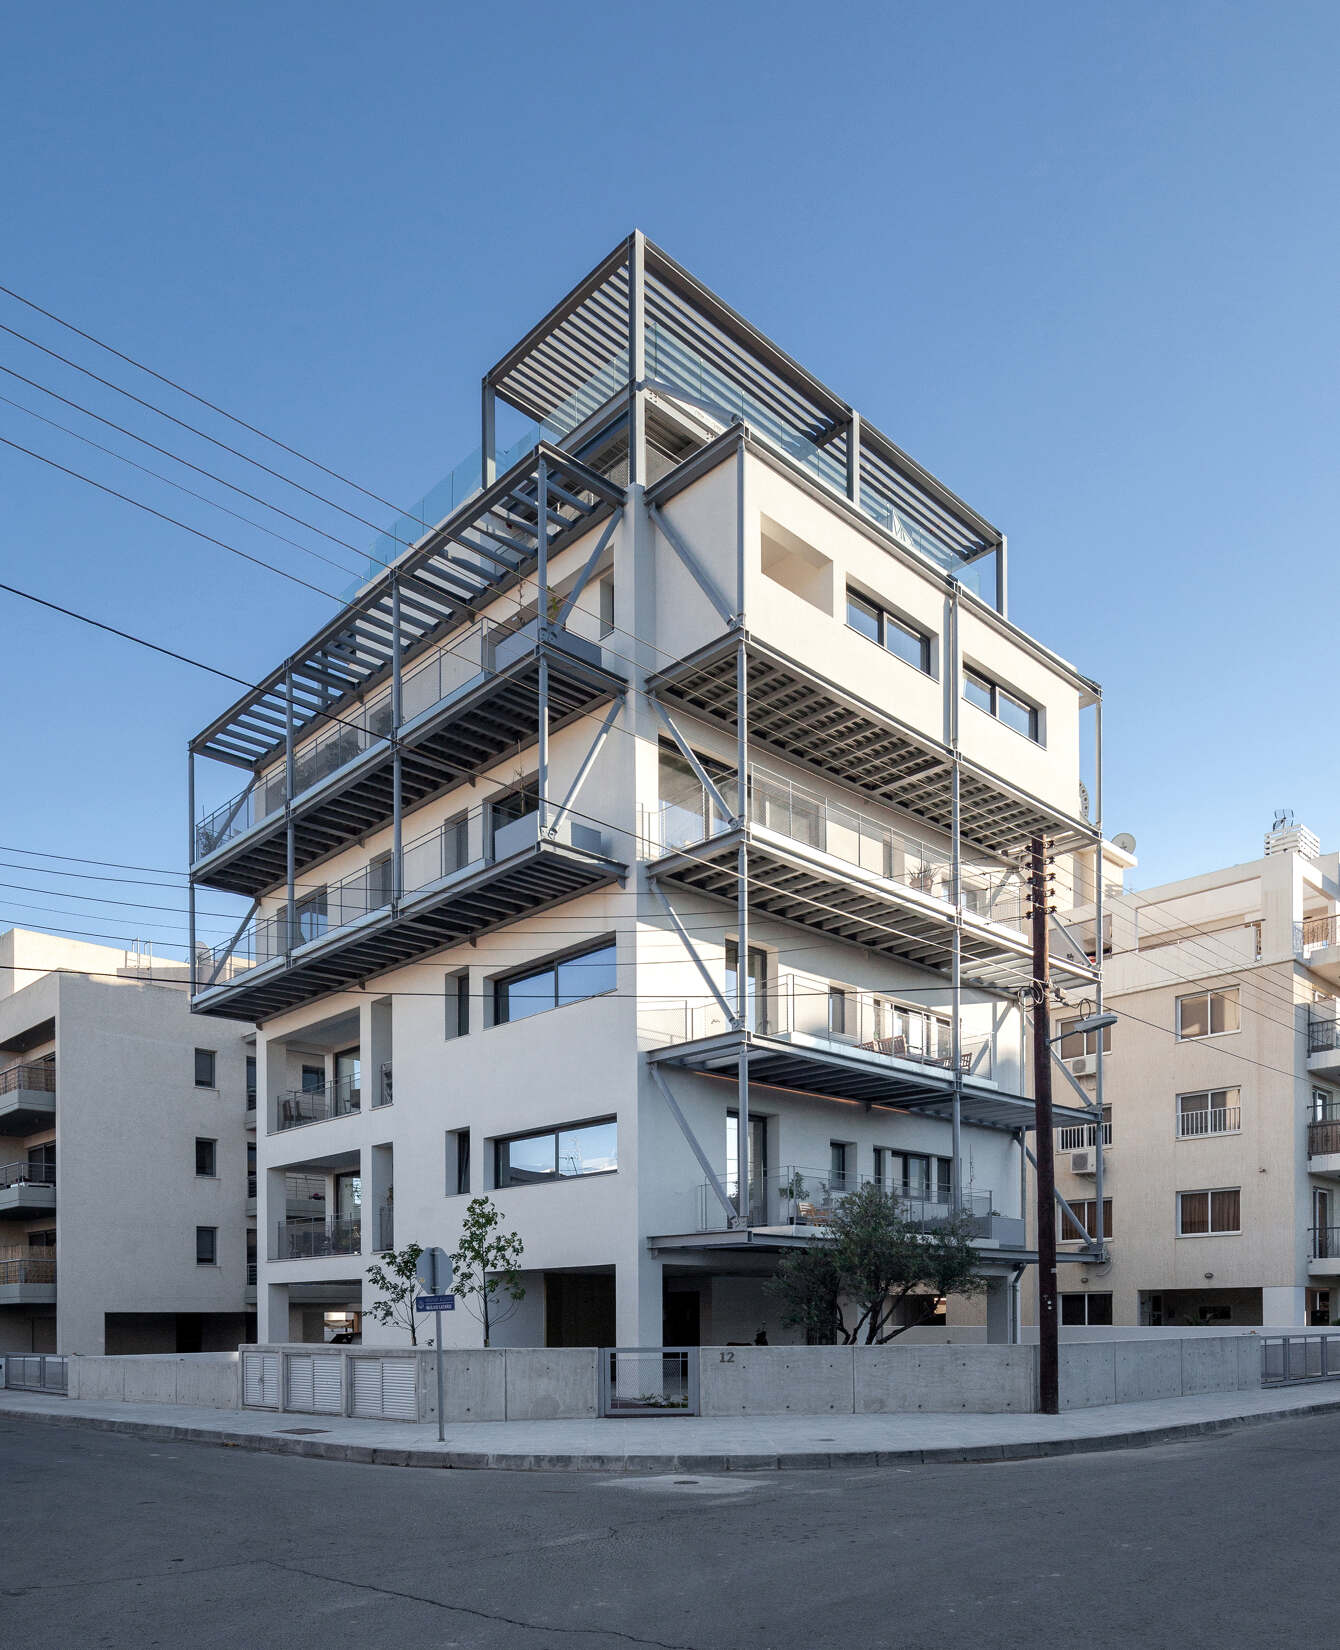 ZIO Apartment Block Alexis Papadopoulos Architectural Practice 01 ct